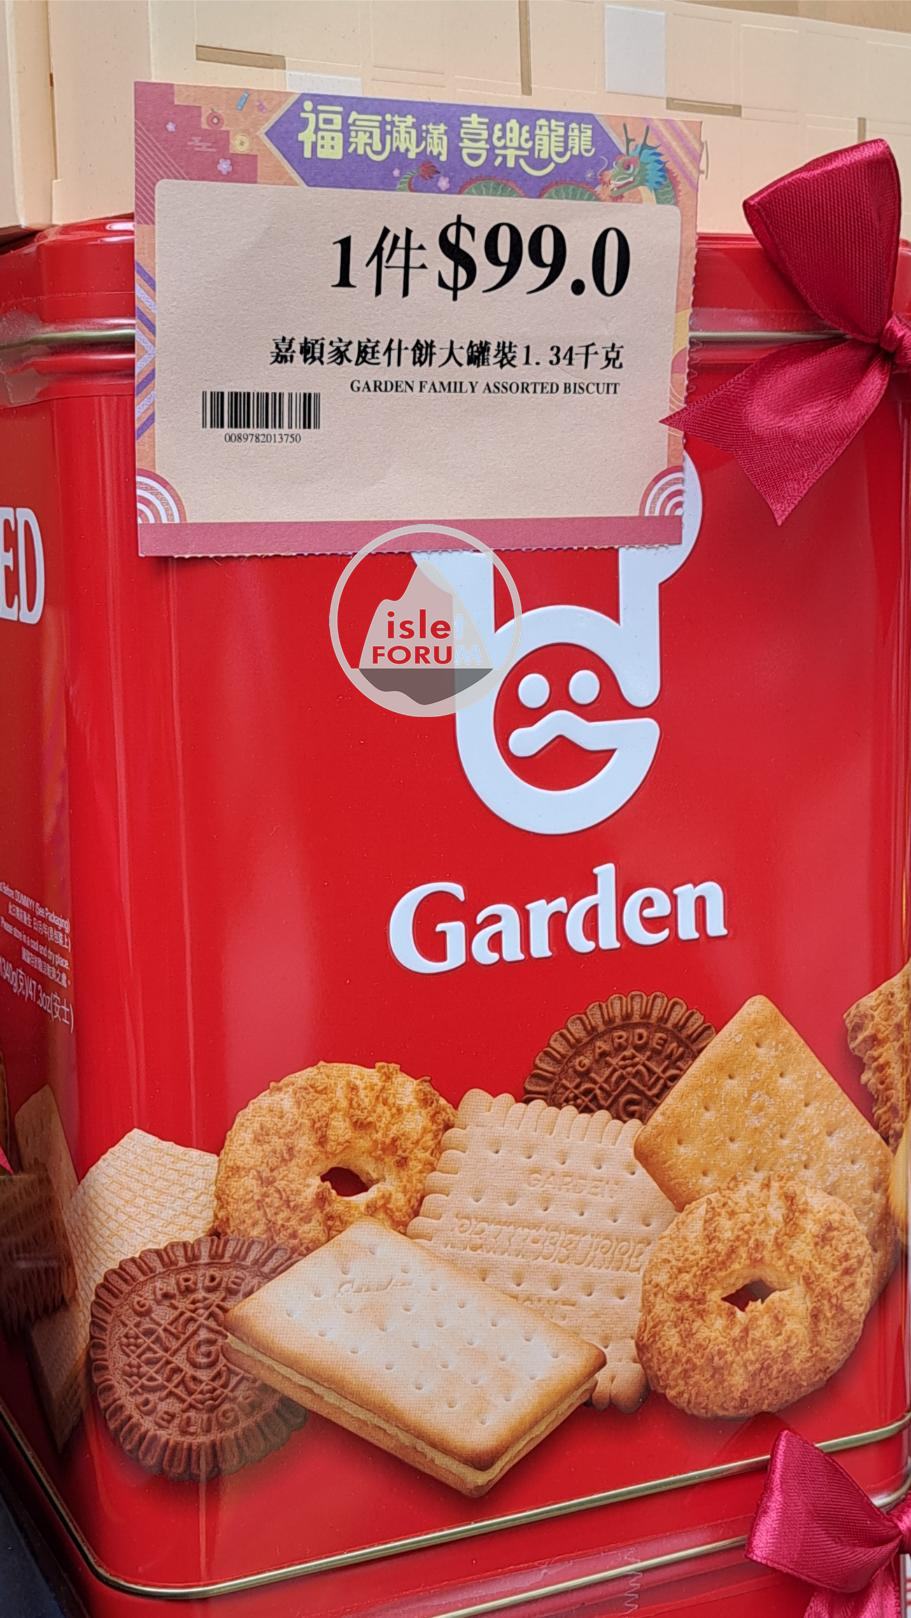 嘉頓紅罐裝雜餅 Garden red canned family assorted biscuits.jpg